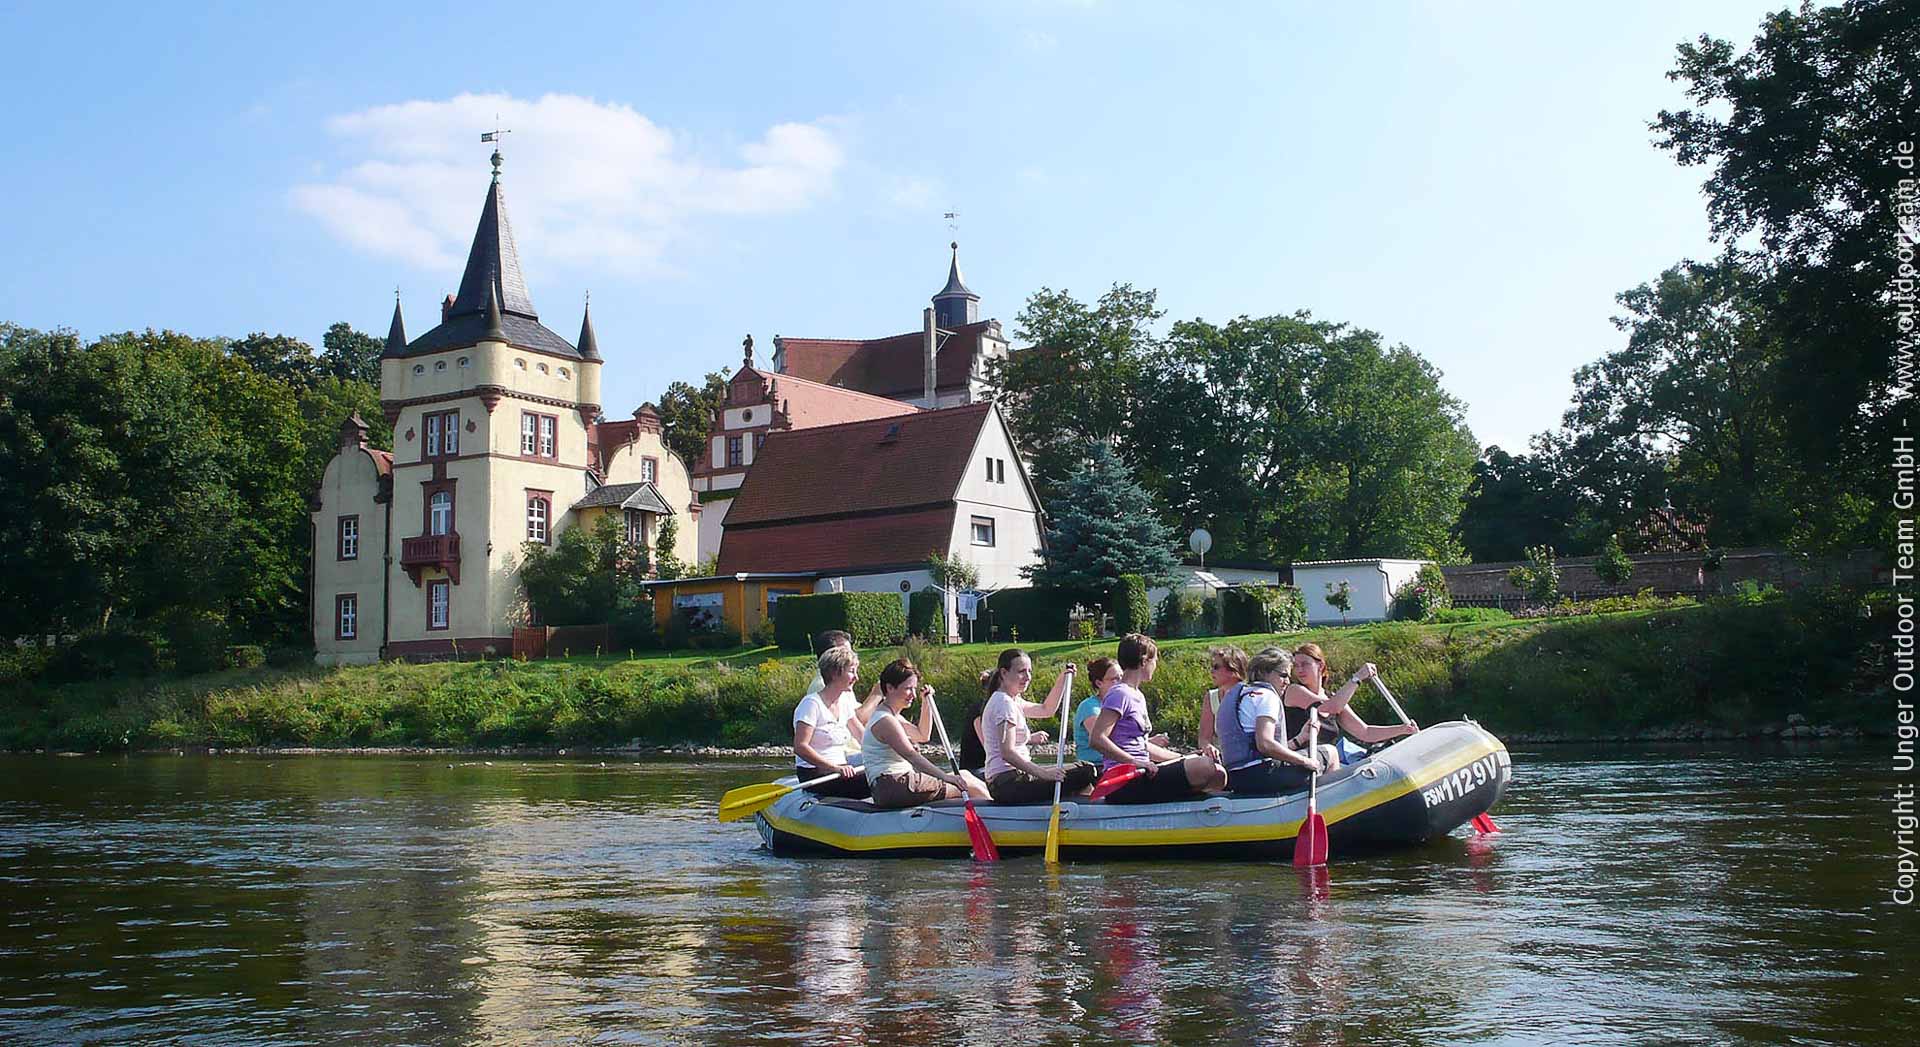 Das "Muldeschlösschen" am Wasserschloss Podelwitz - Wasserwanderung auf der Mulde.